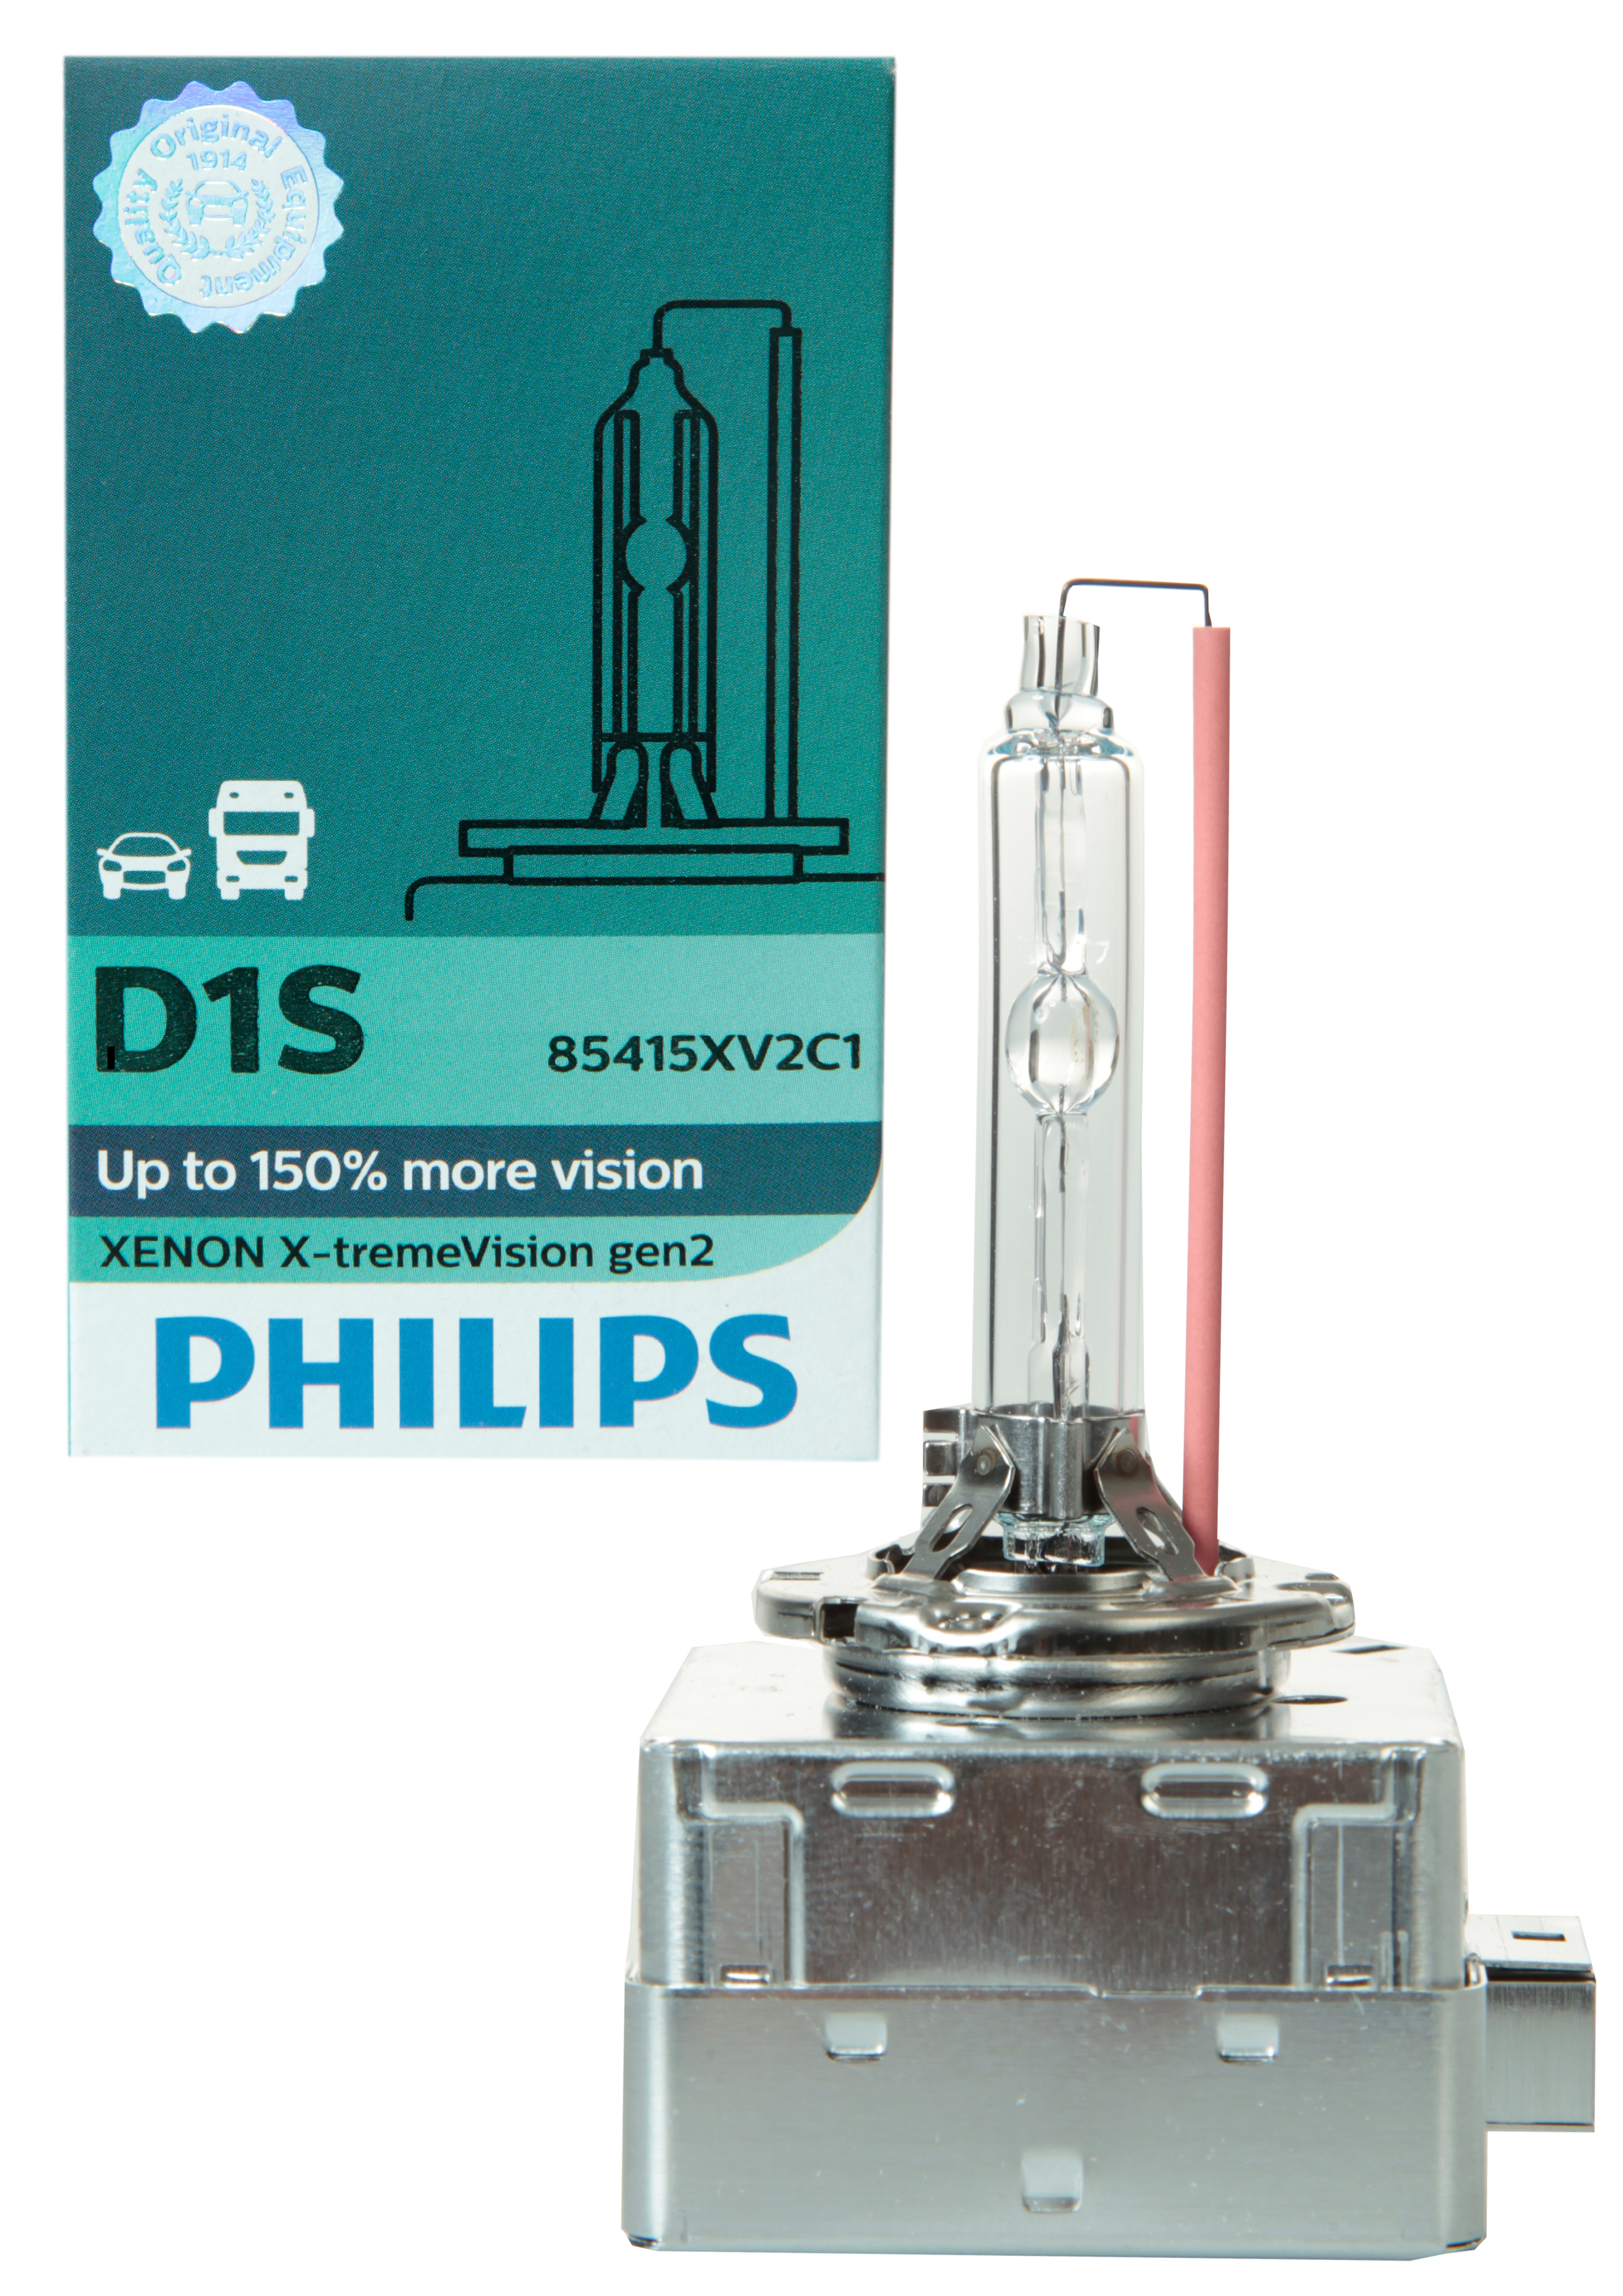 Philips D1S 85415XV2C1 X-treme Vision gen2 Xenon Brenner in C1